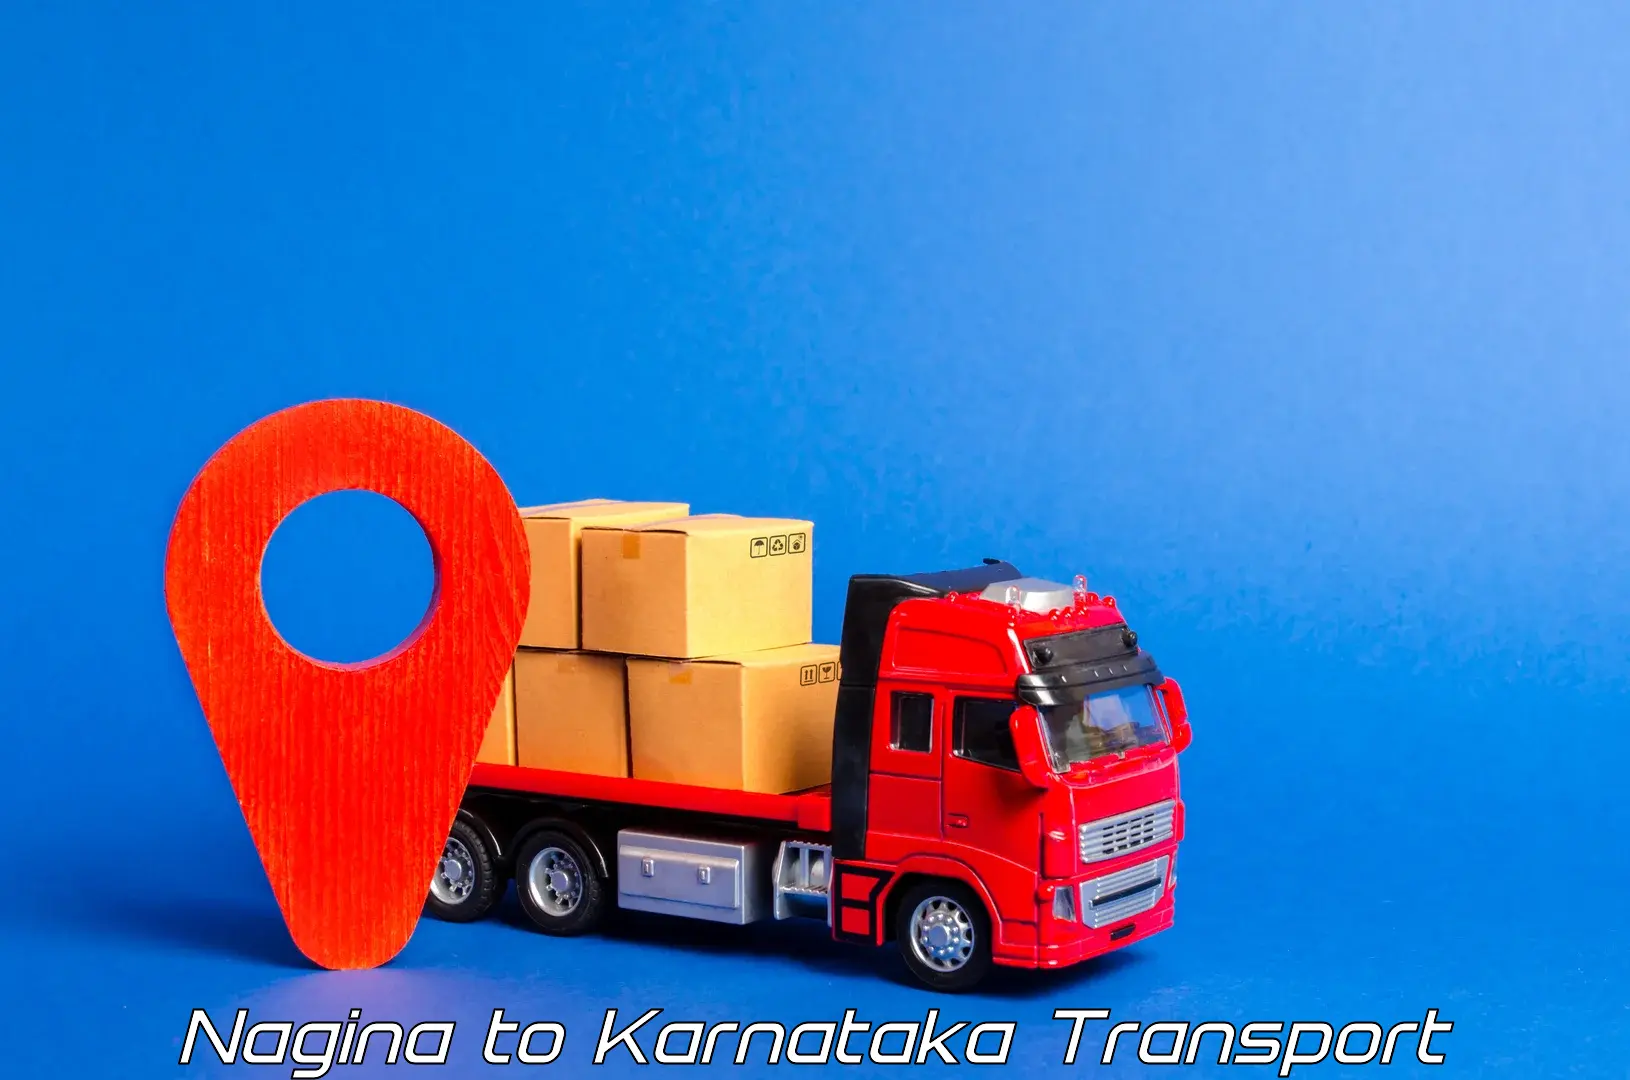 Logistics transportation services Nagina to Toranagallu